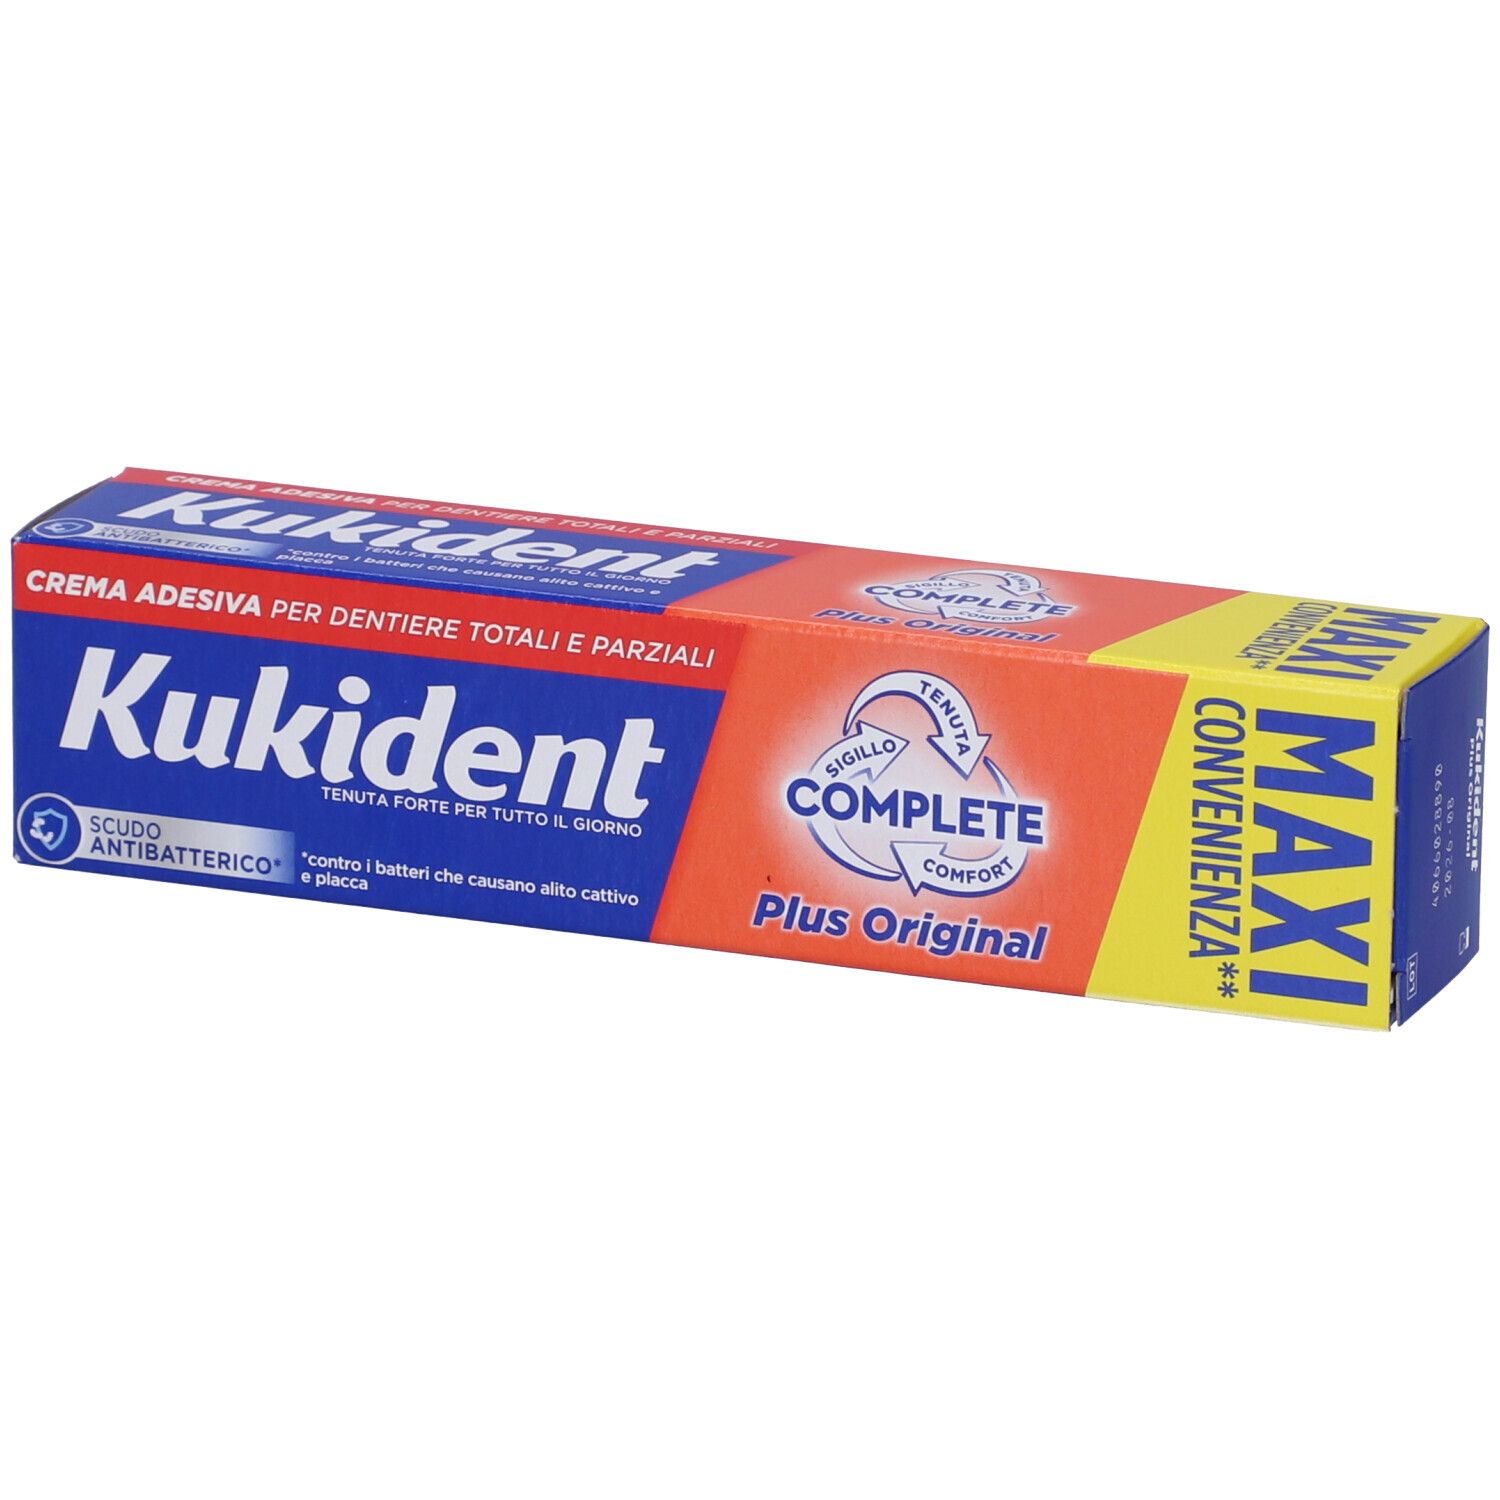 Kukident Complete Plus Original Crema Adesiva Per Dentiere Totali e Parziali Aroma Menta Leggera